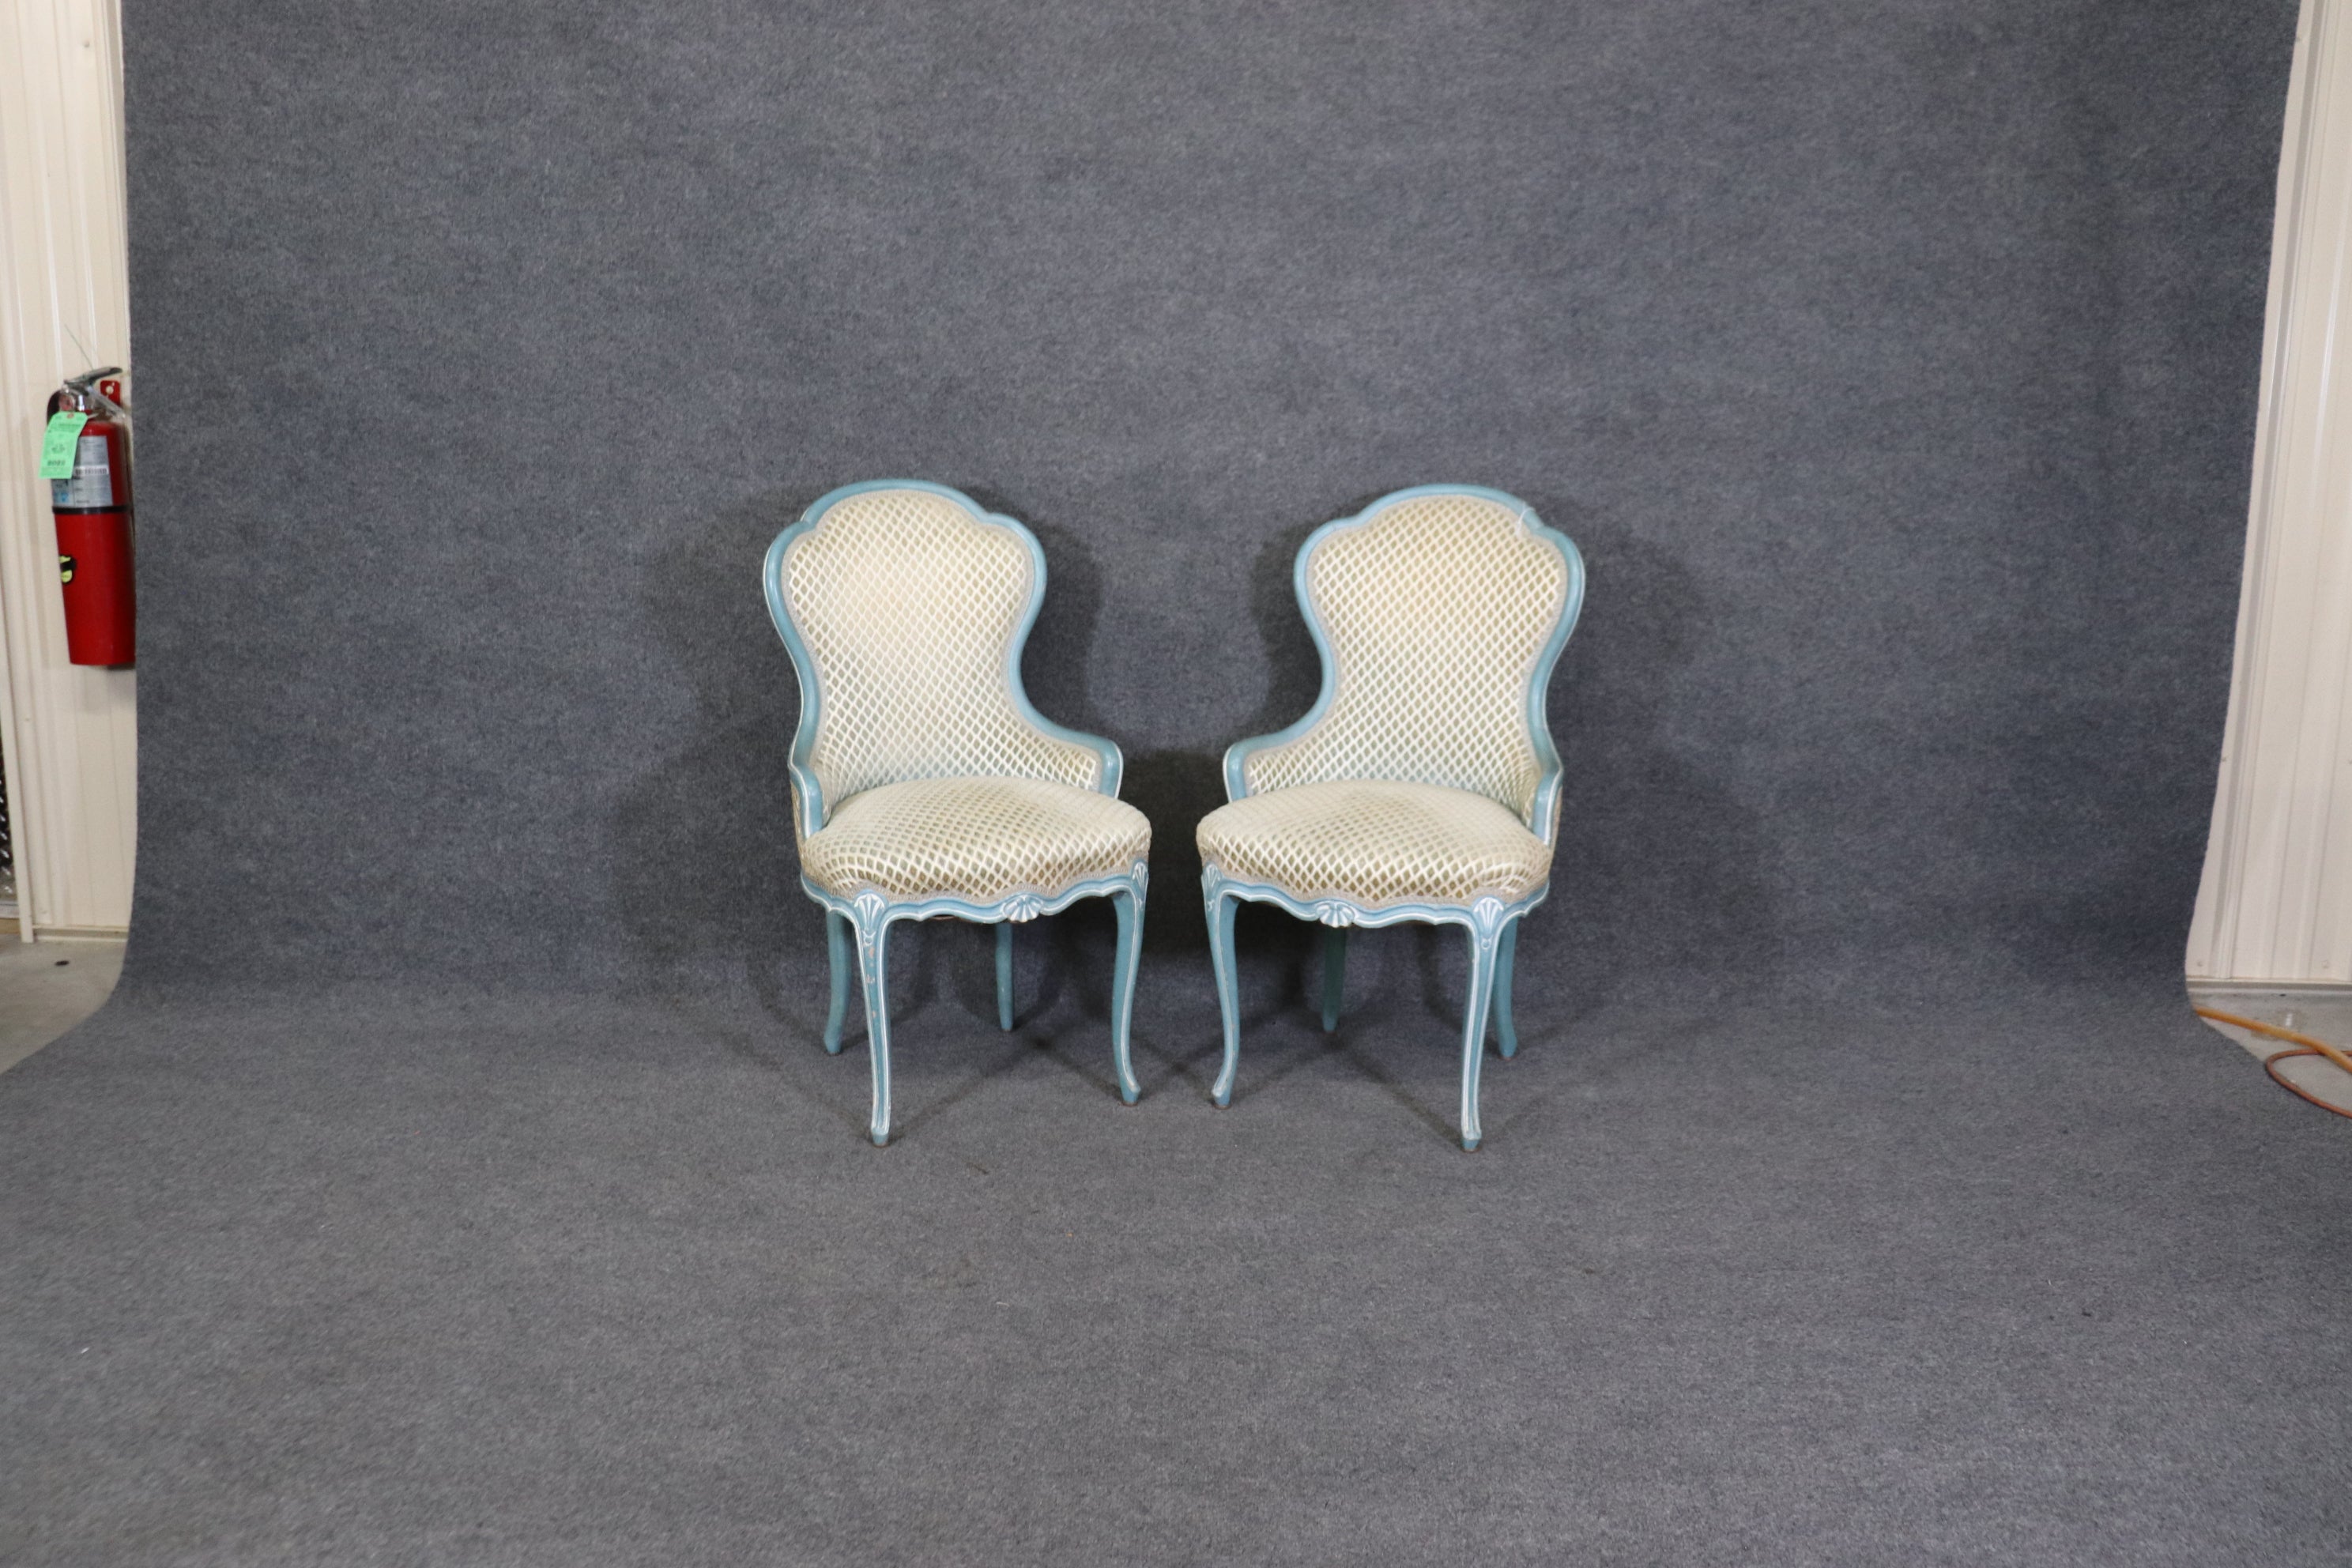 Es sind wunderschöne Stühle mit fantastisch lackierten Rahmen in Blau und Weiß. Die Stühle stammen aus den 1950er Jahren und sind in gutem Zustand. Die Polsterung ist früh, so erwarten Sie Zeichen von Verschleiß und Verwendung wie Flecken oder